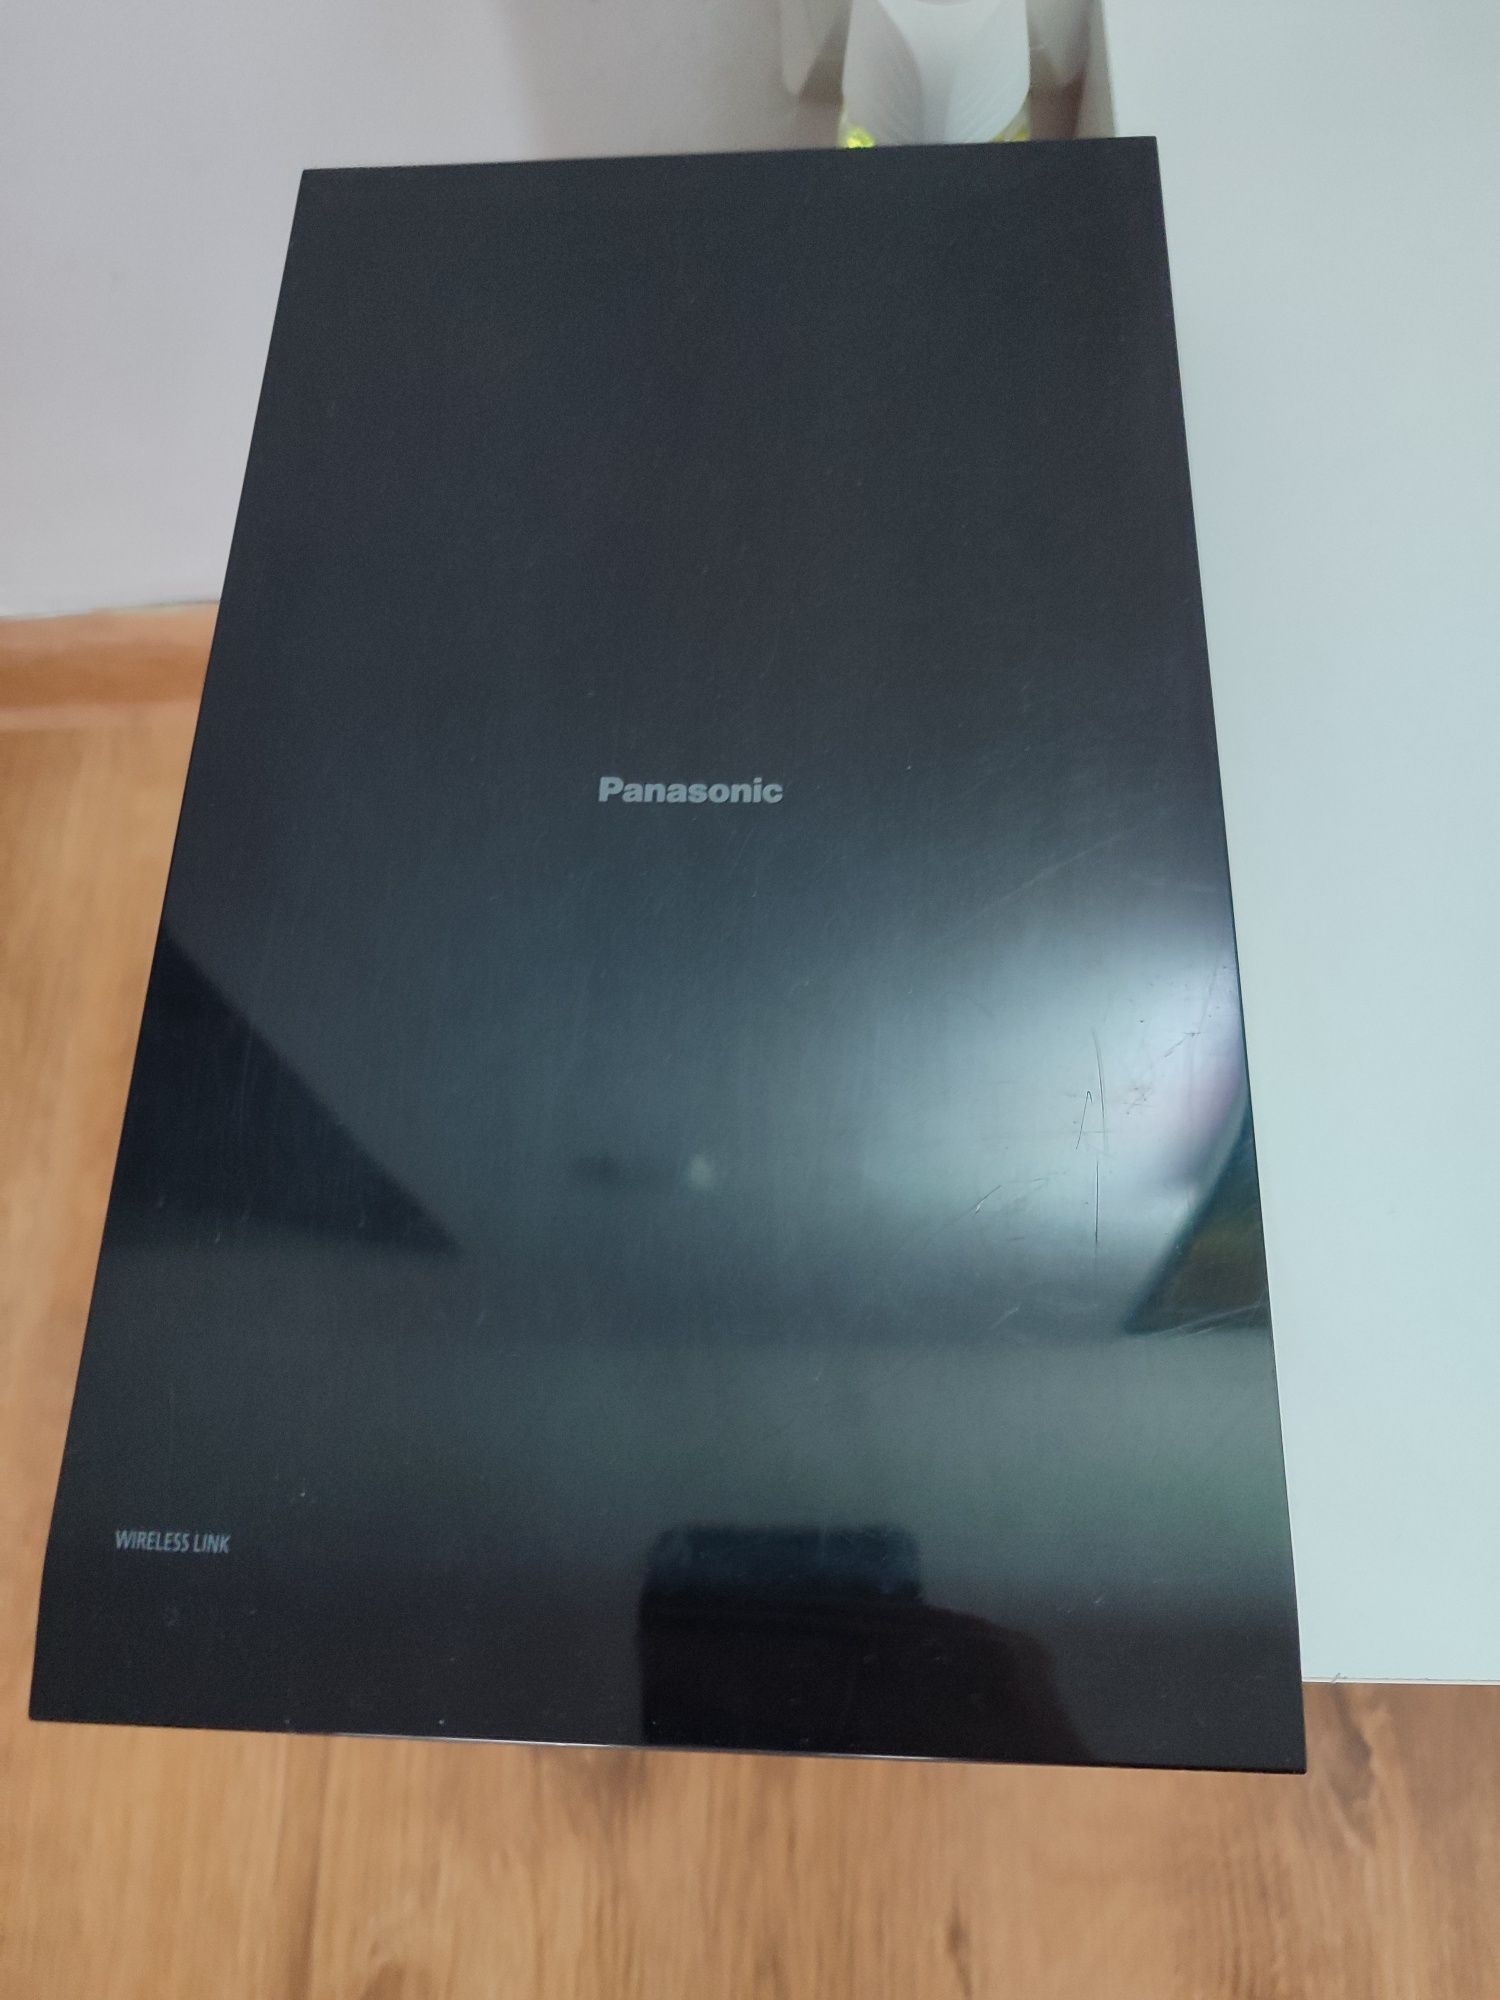 Sounbar+subwoofer Panasonic